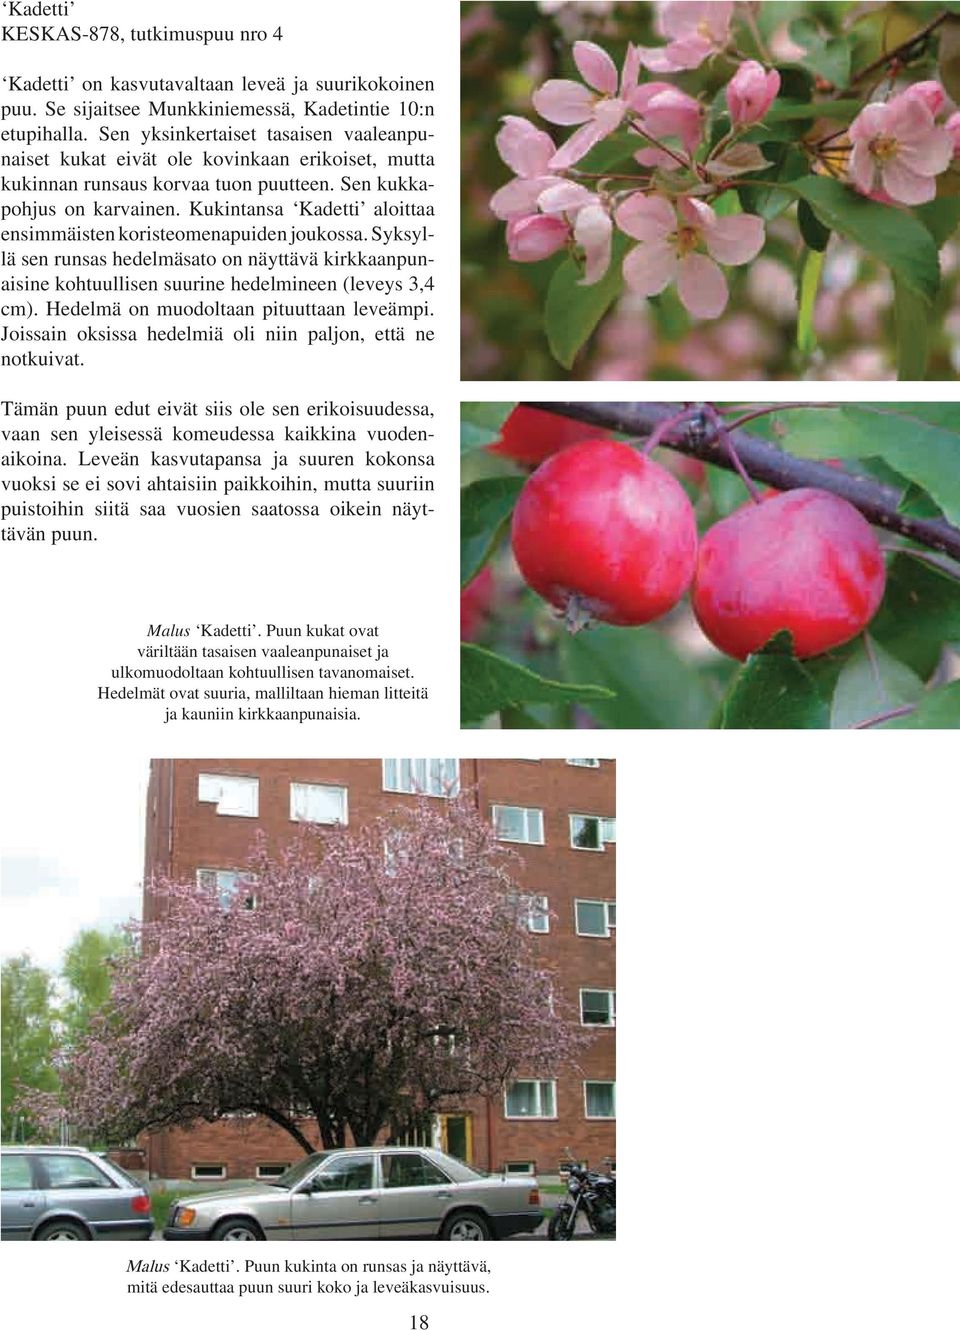 Kukintansa Kadetti aloittaa ensimmäisten koristeomenapuiden joukossa. Syksyllä sen runsas hedelmäsato on näyttävä kirkkaanpunaisine kohtuullisen suurine hedelmineen (leveys 3,4 cm).